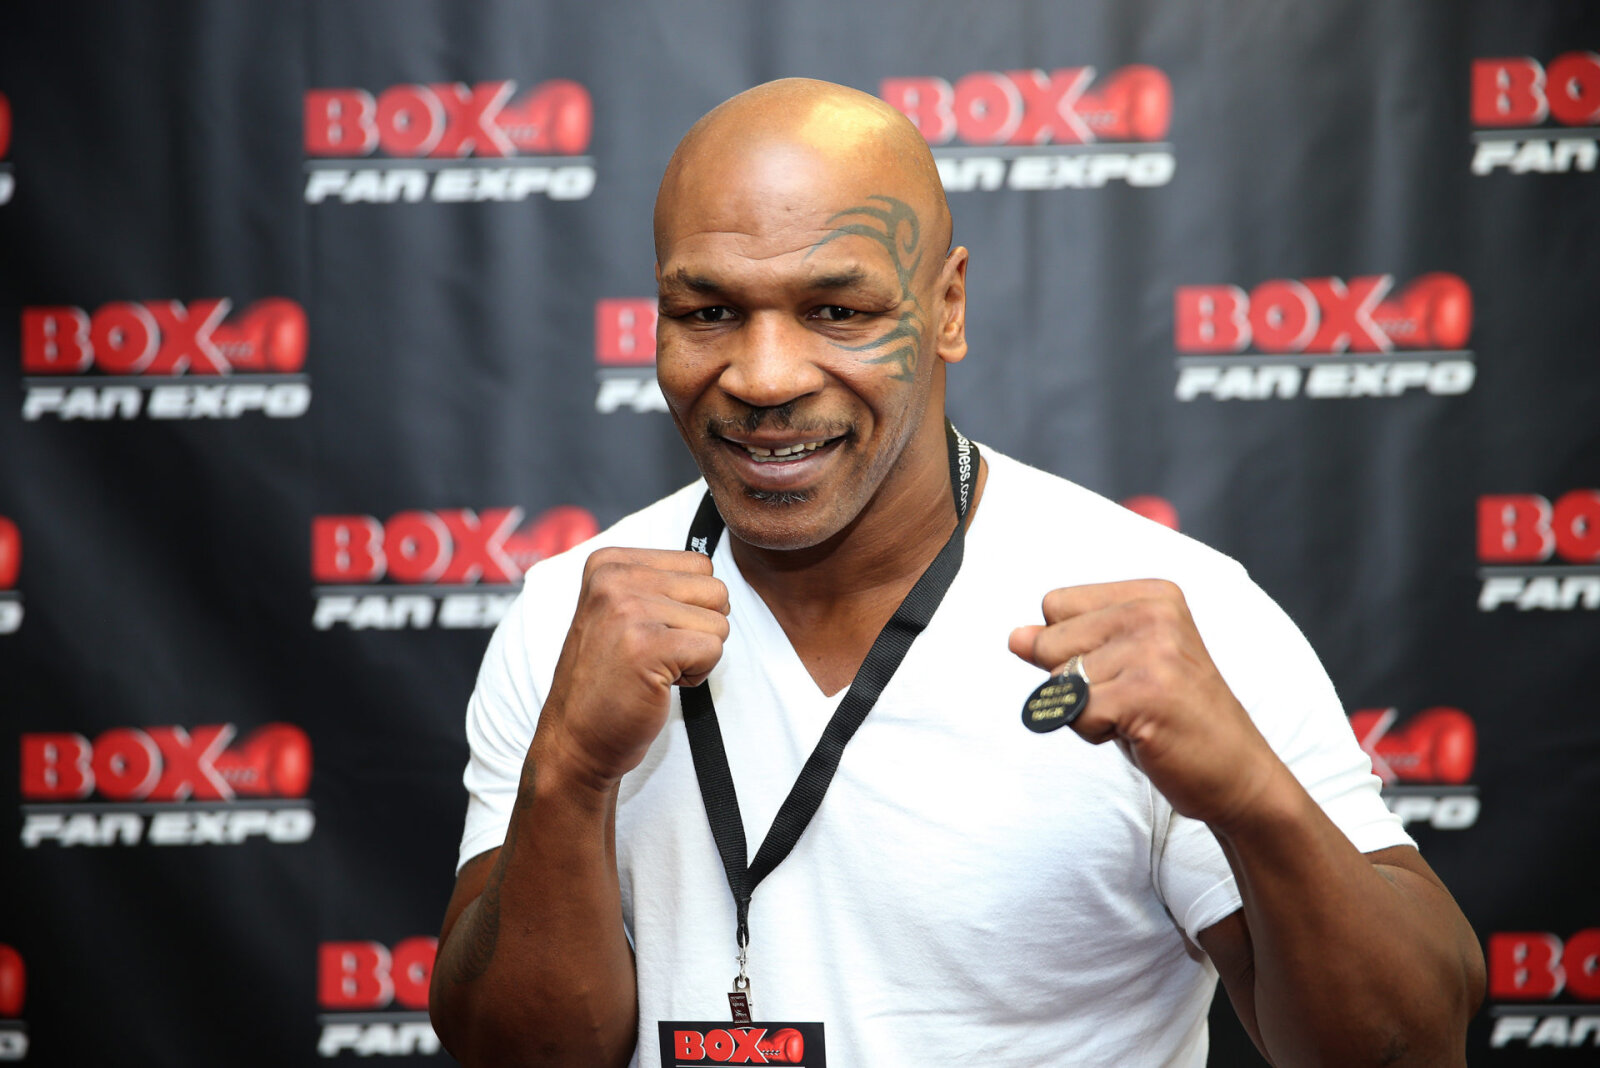 Quand est le prochain combat de Mike Tyson?: L'entraîneur révèle les plans 2021 pour la légende de la boxe